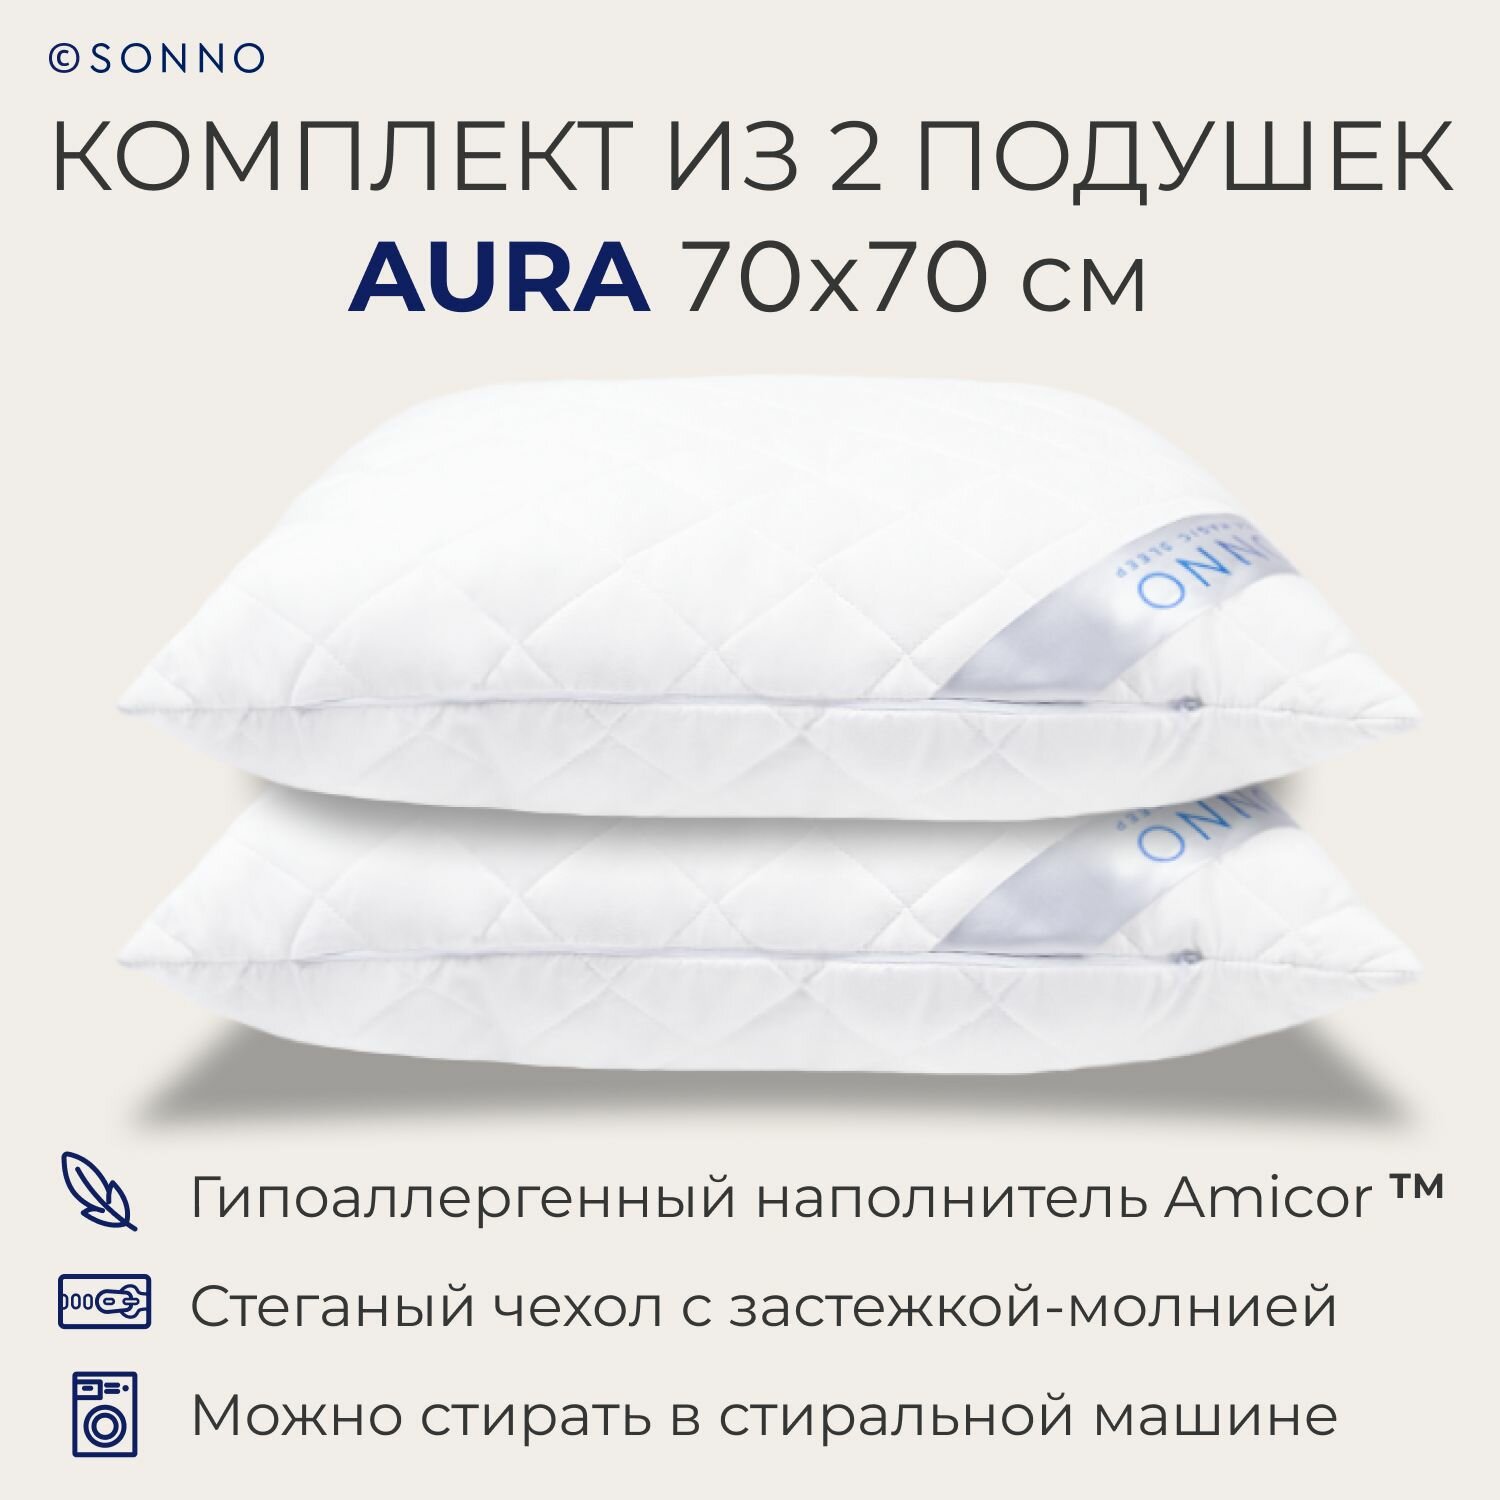 Комплект подушек для сна и отдыха SONNO AURA ослепительно белый, гипоаллергенная, средней жесткости, регулируемая поддержка, съемный чехол, 70x70 см, высота 15 см, 2 шт